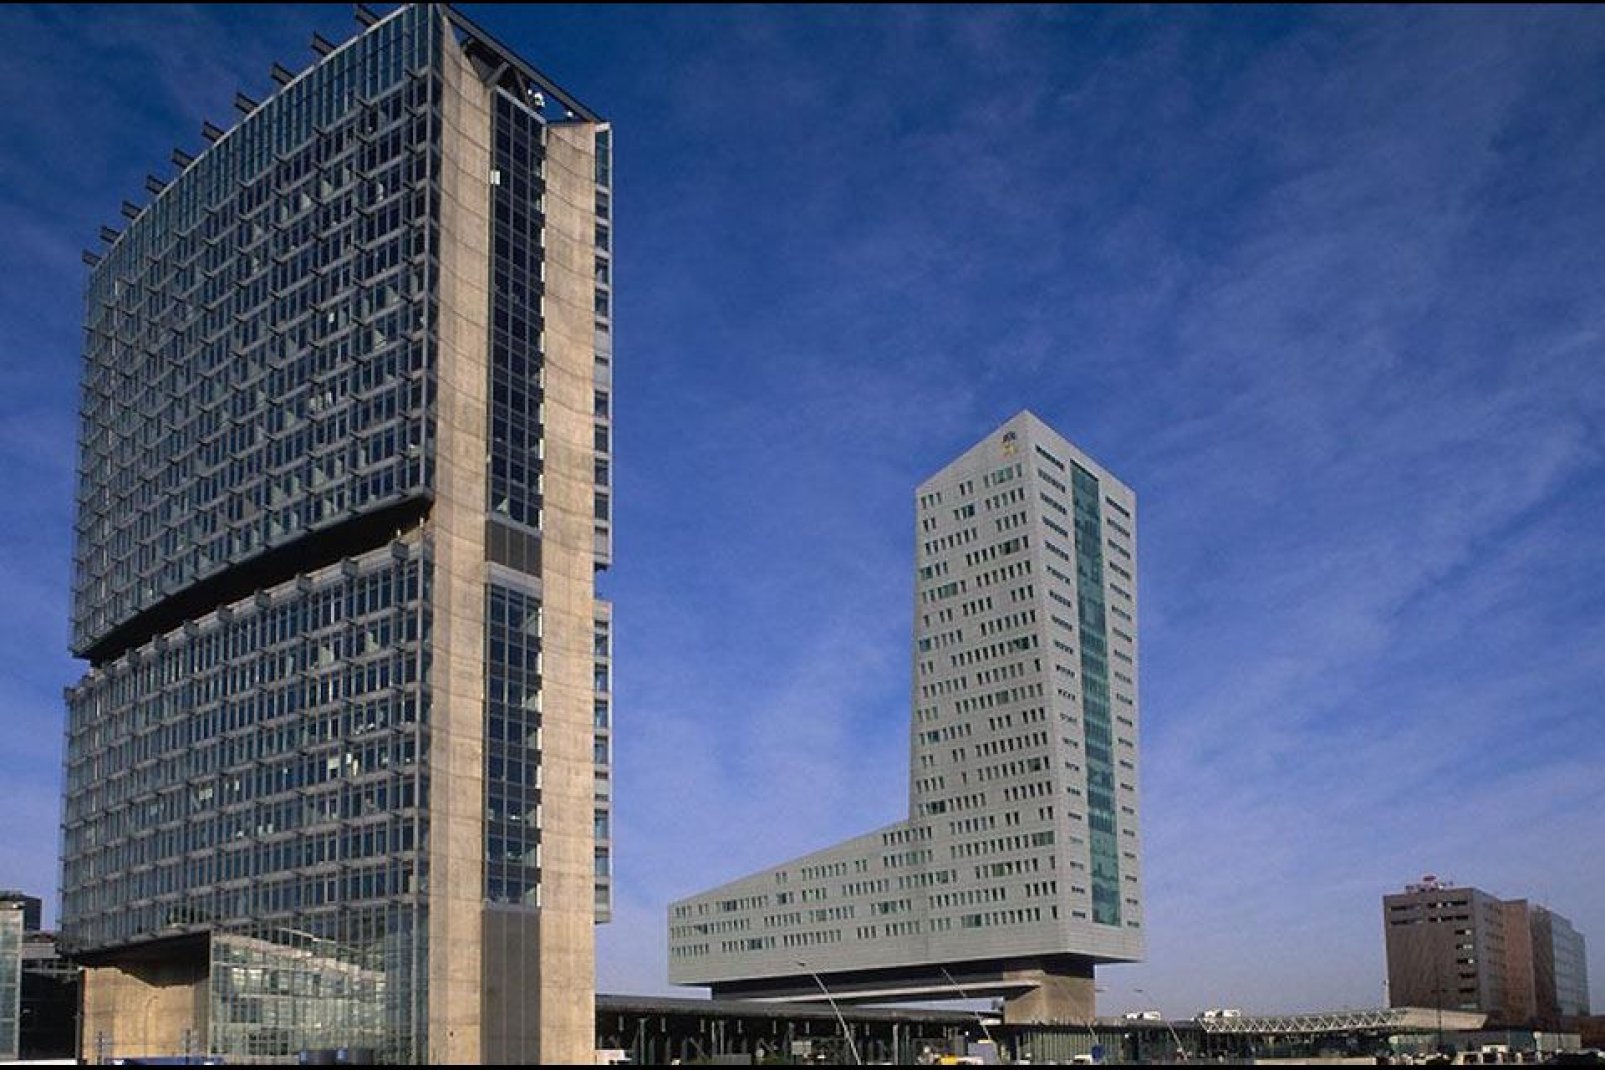 Los proyectos de ordenación son múltiples en Lille. Por ejemplo, el Grand Projet Urbain prevé la construcción de 3400 nuevas viviendas.